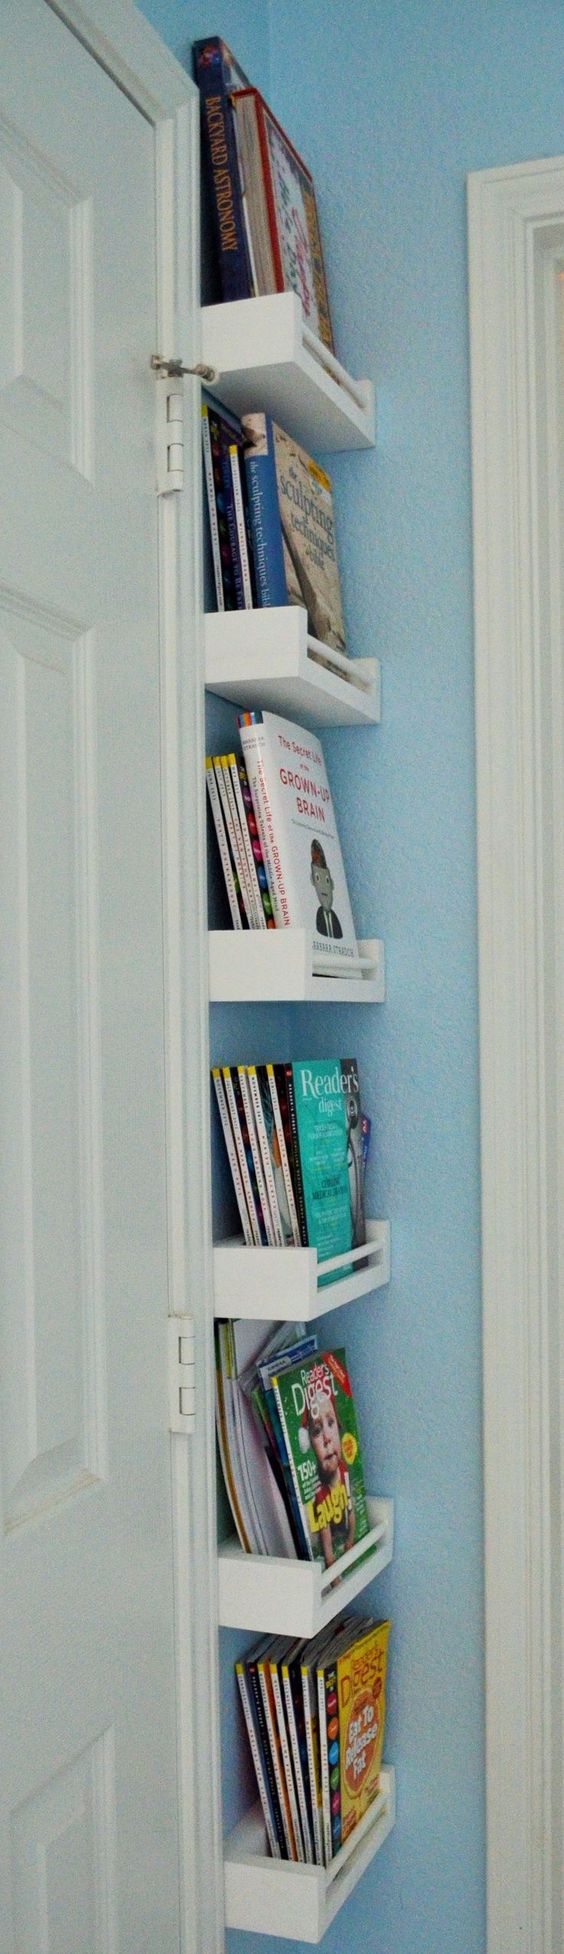 Small Corner Bookshelves. Work great for behind door in kids room